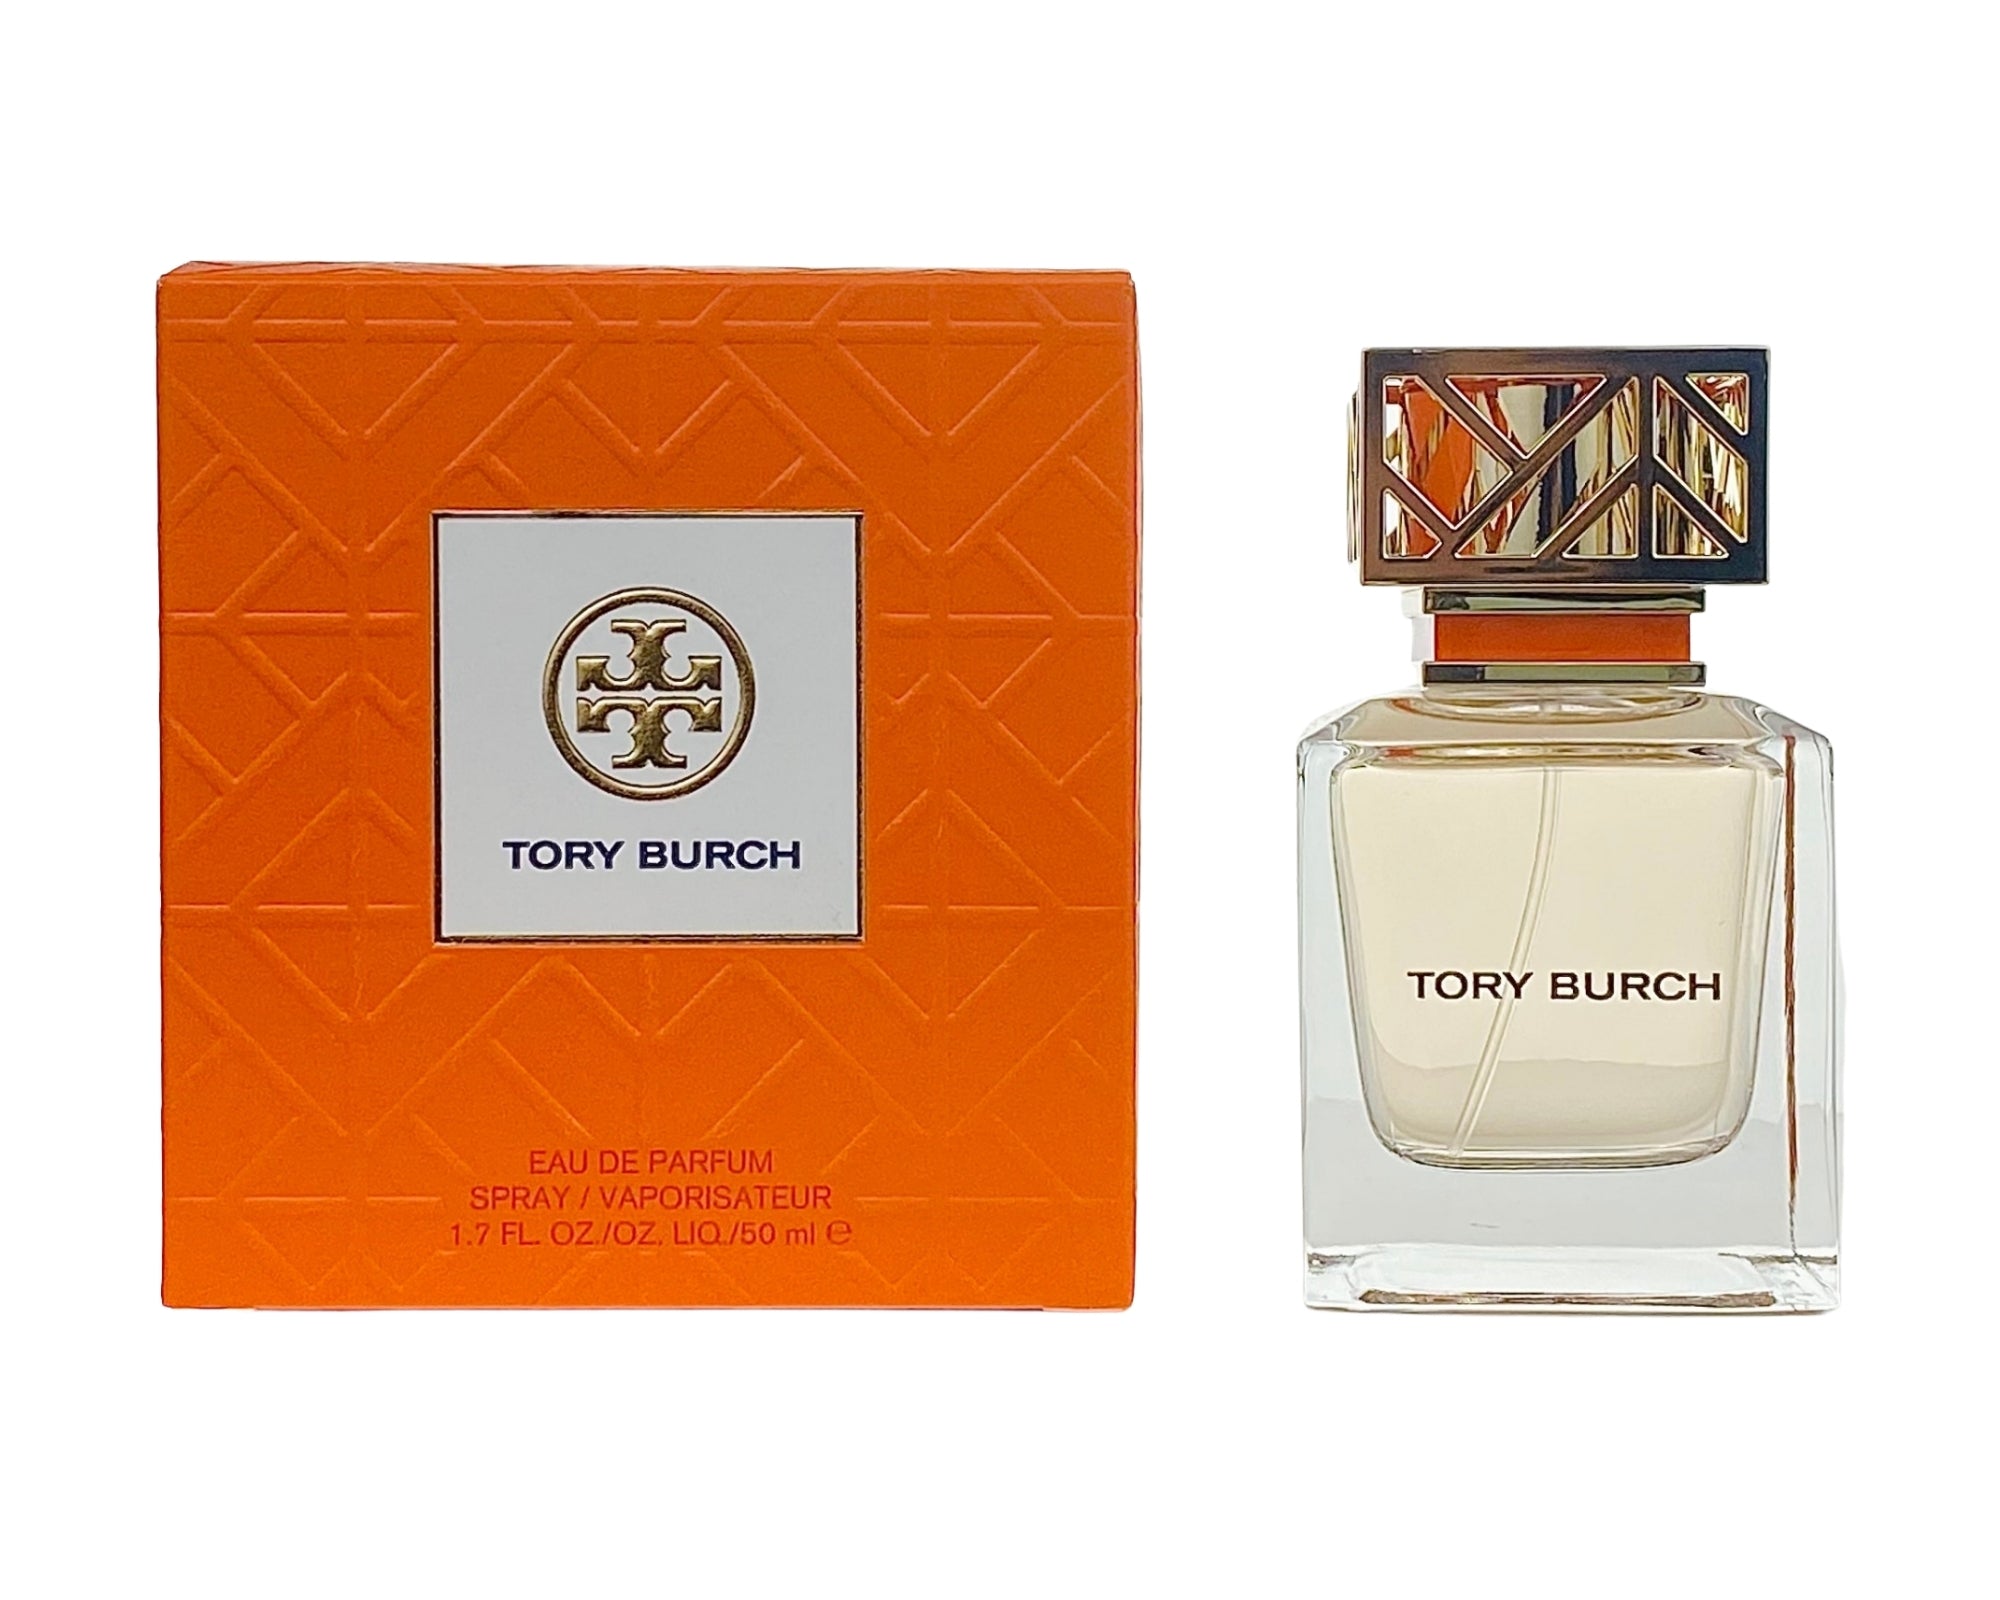 Tory Burch Perfume Eau De Parfum by Tory Burch 